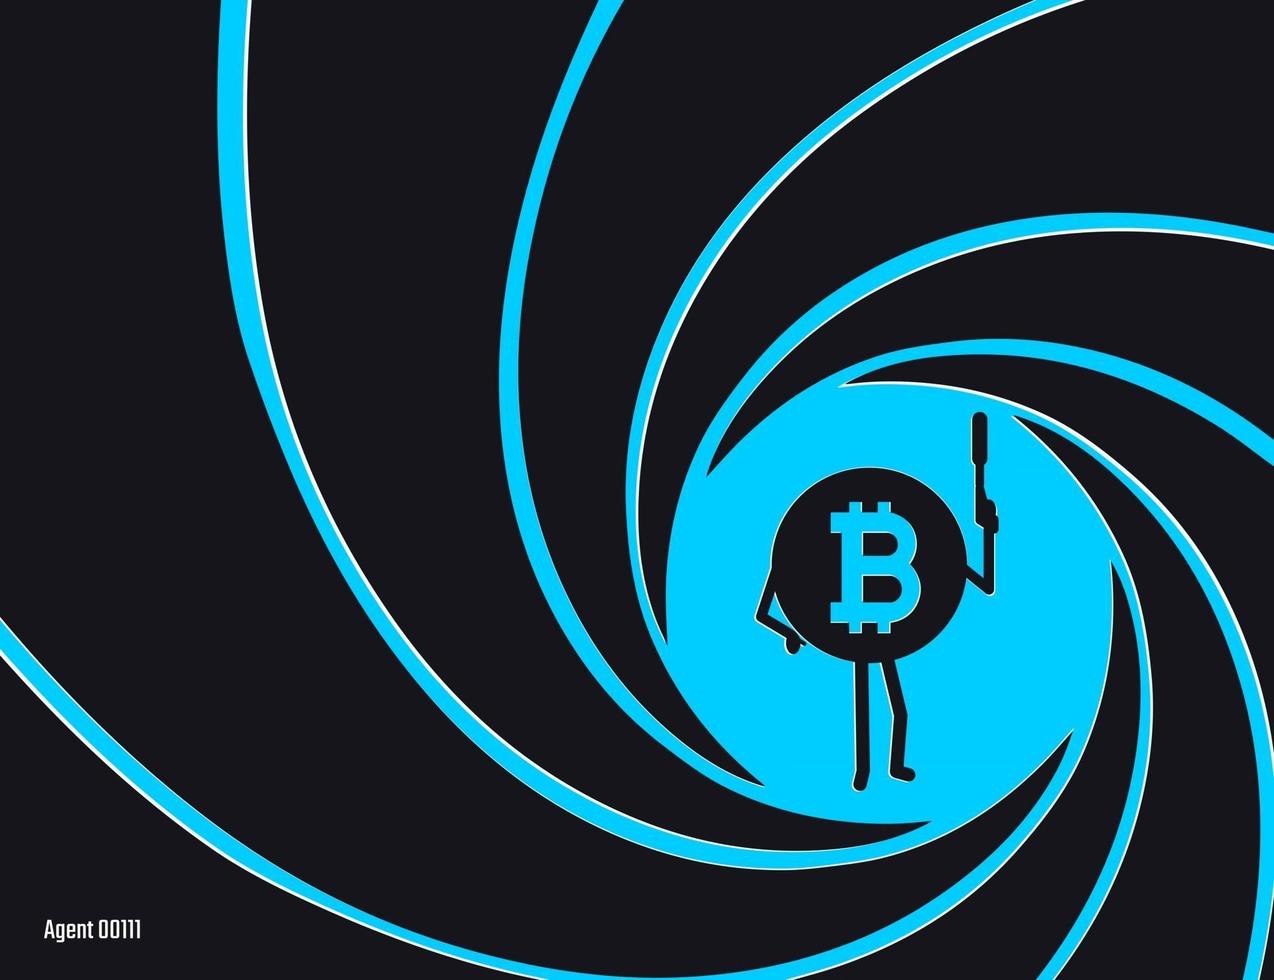 kryptovaluta bitcoin i cirkeln av rifled fat vektorillustration. hemlig agent, detektiv, spion bit myntig karaktär med en pistol platt stil illustration vektor